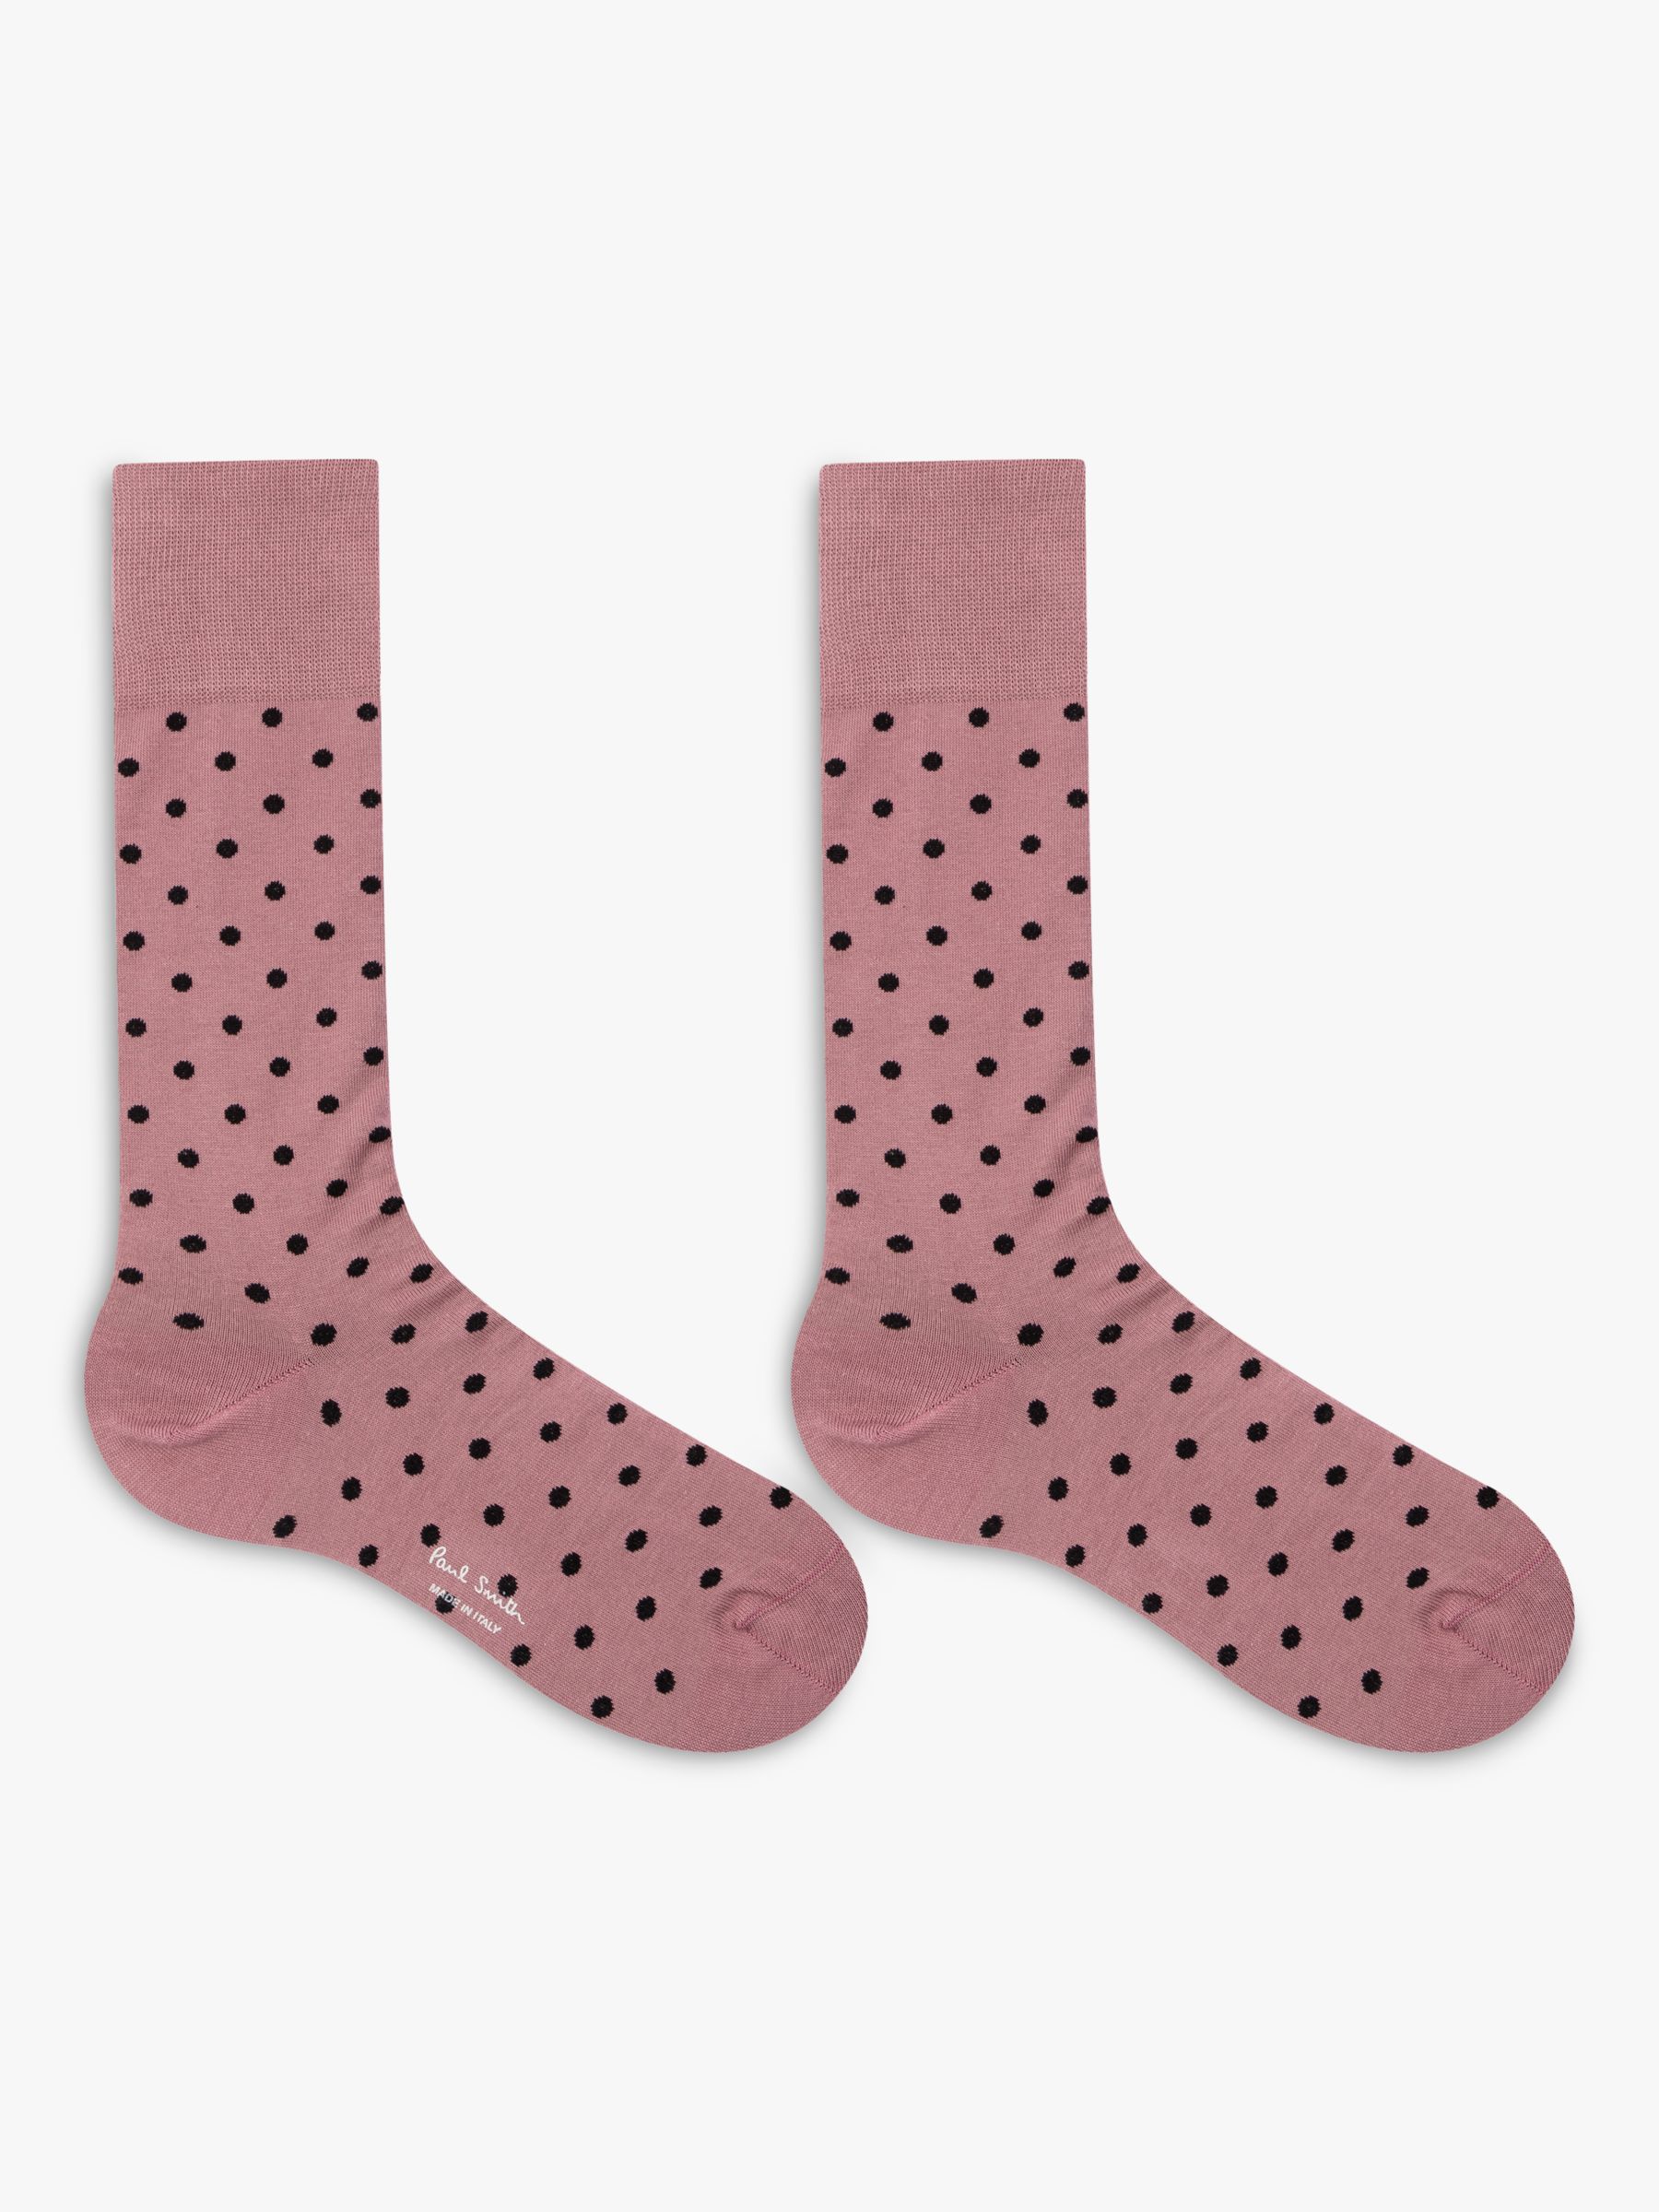 Buy Paul Smith Polka Dot Socks, Pack of 3, Multi Online at johnlewis.com